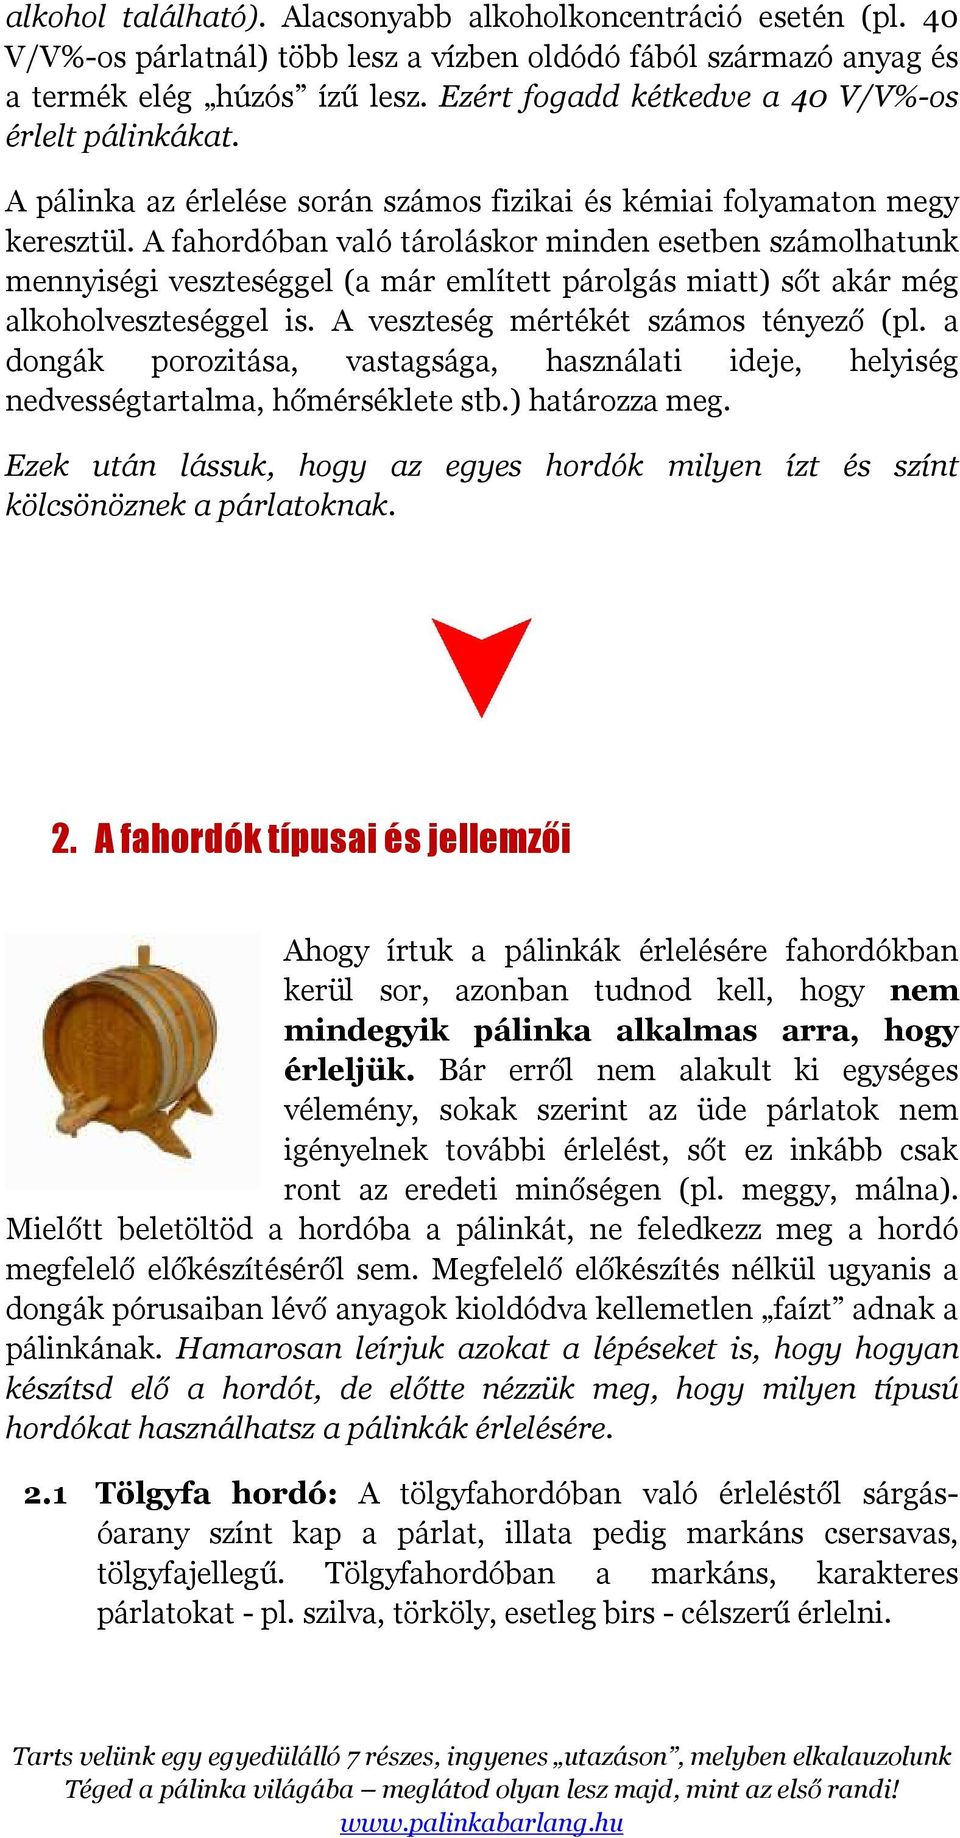 A pálinka fahordóban történő érlelése - PDF Ingyenes letöltés